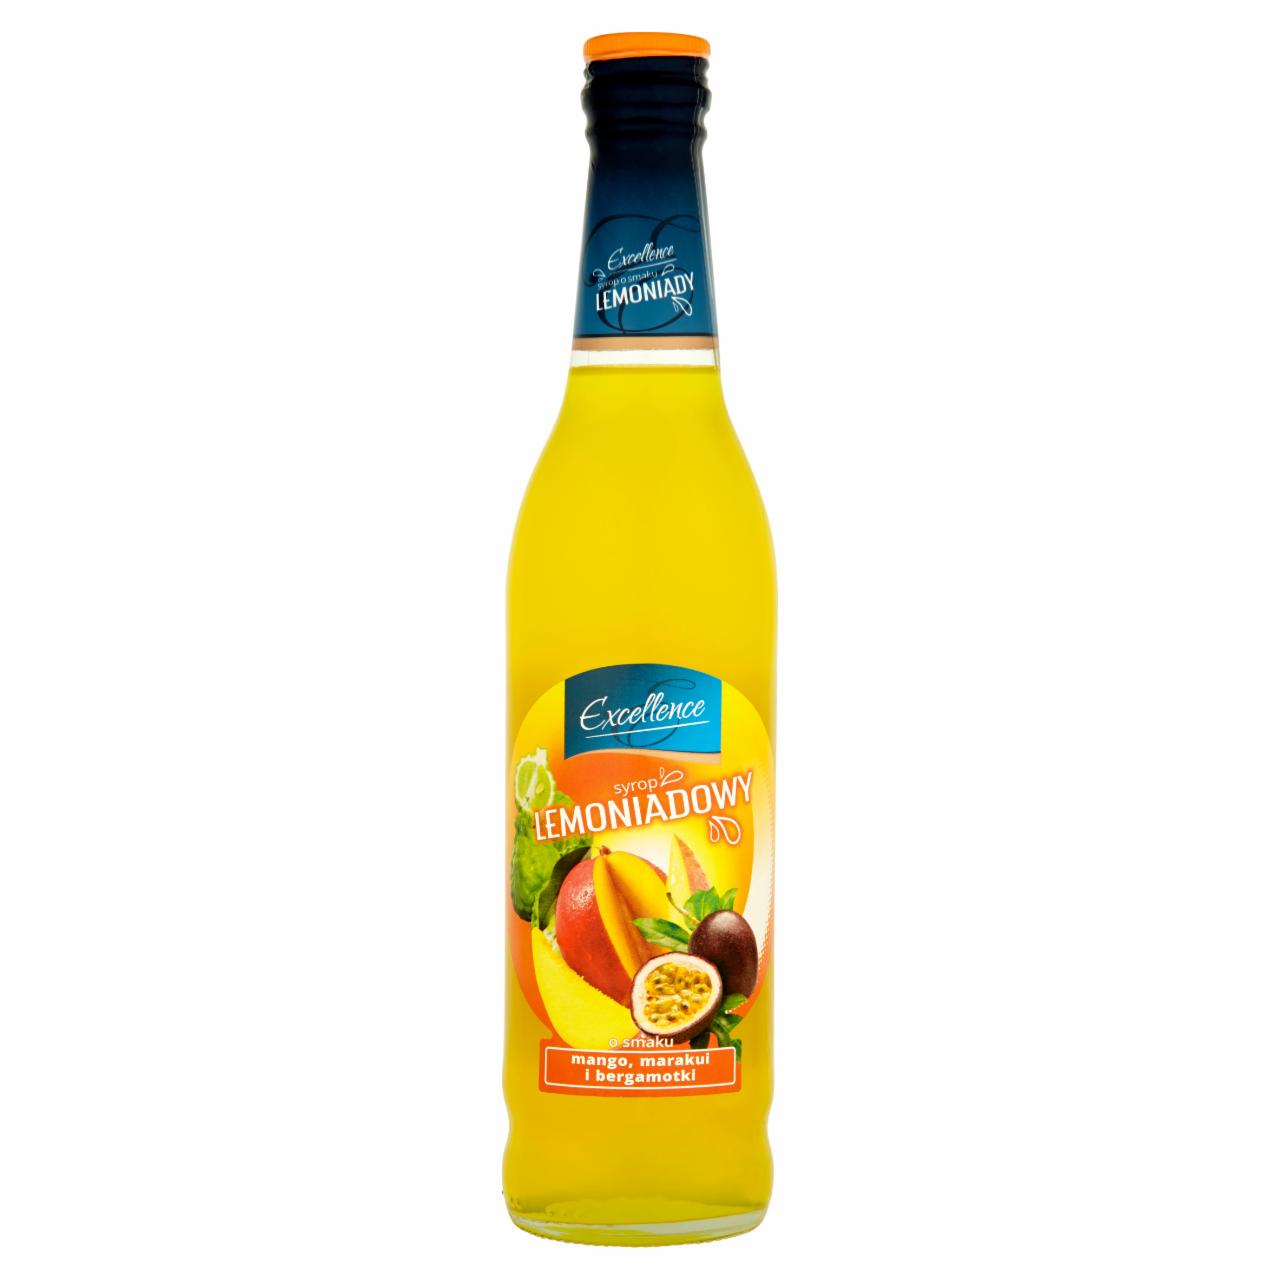 Zdjęcia - Excellence Syrop lemoniadowy o smaku mango marakui i bergamotki 430 ml